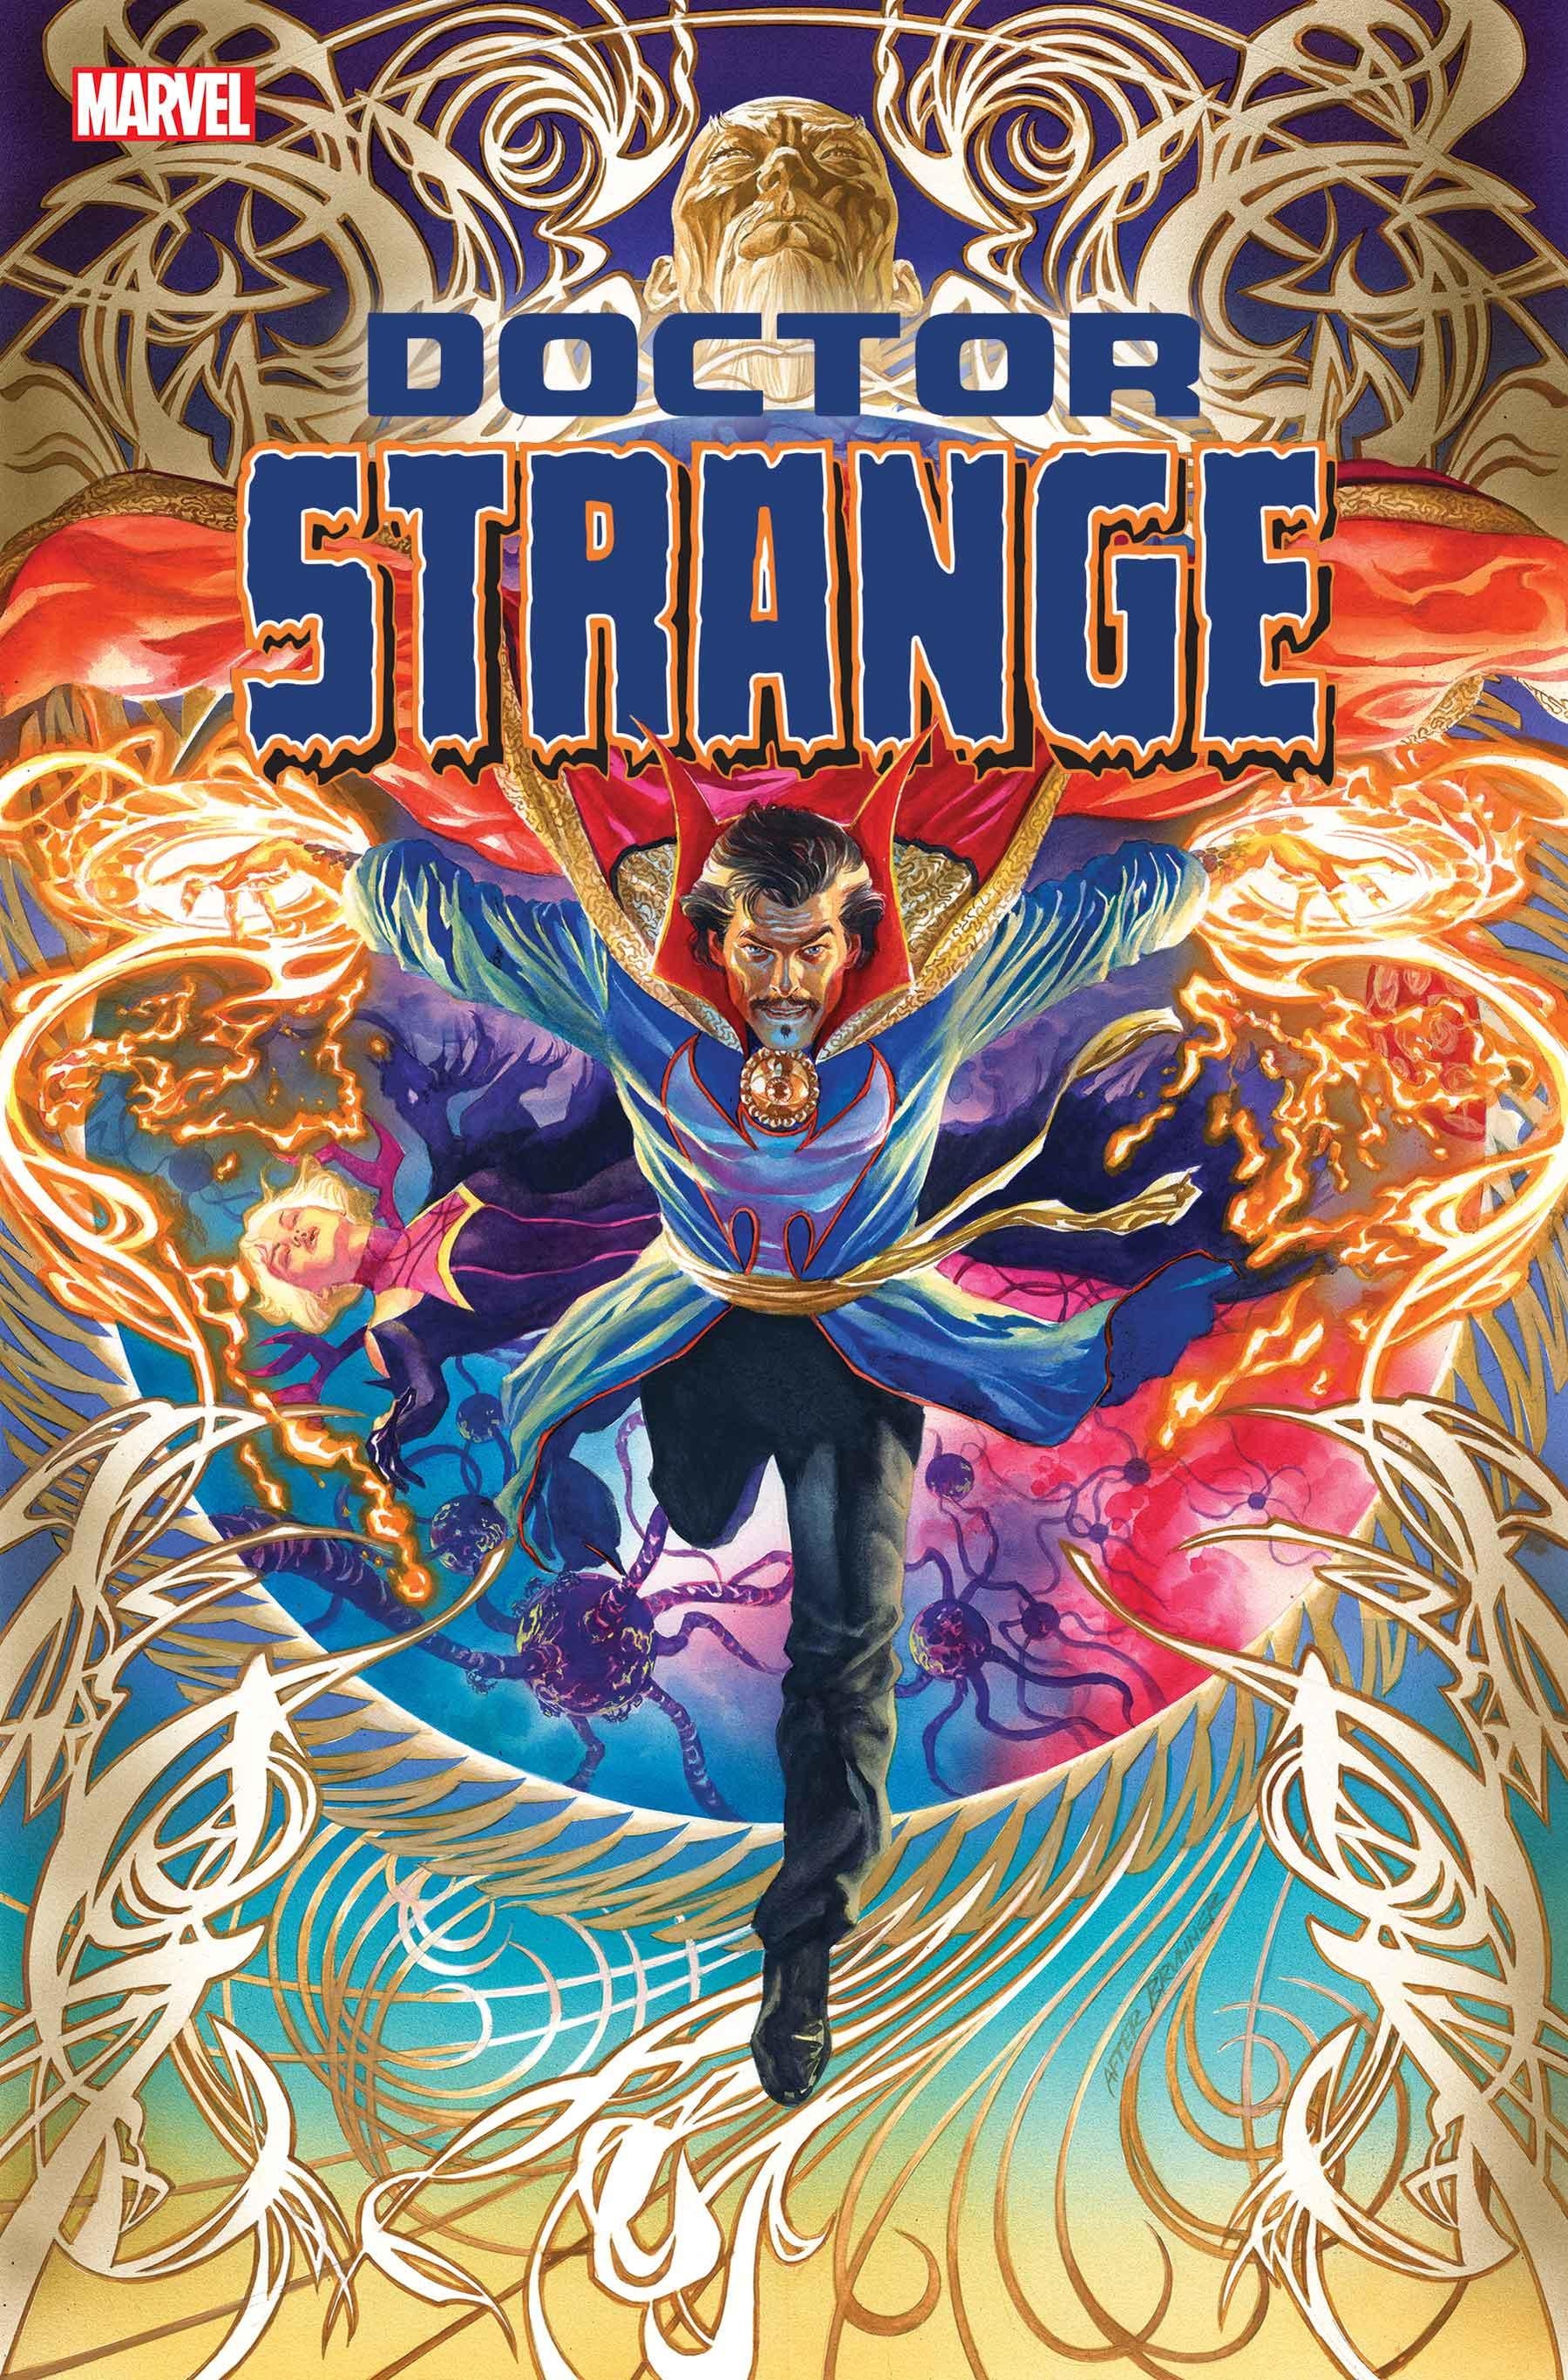 Marvel Announces New Doctor Strange Series